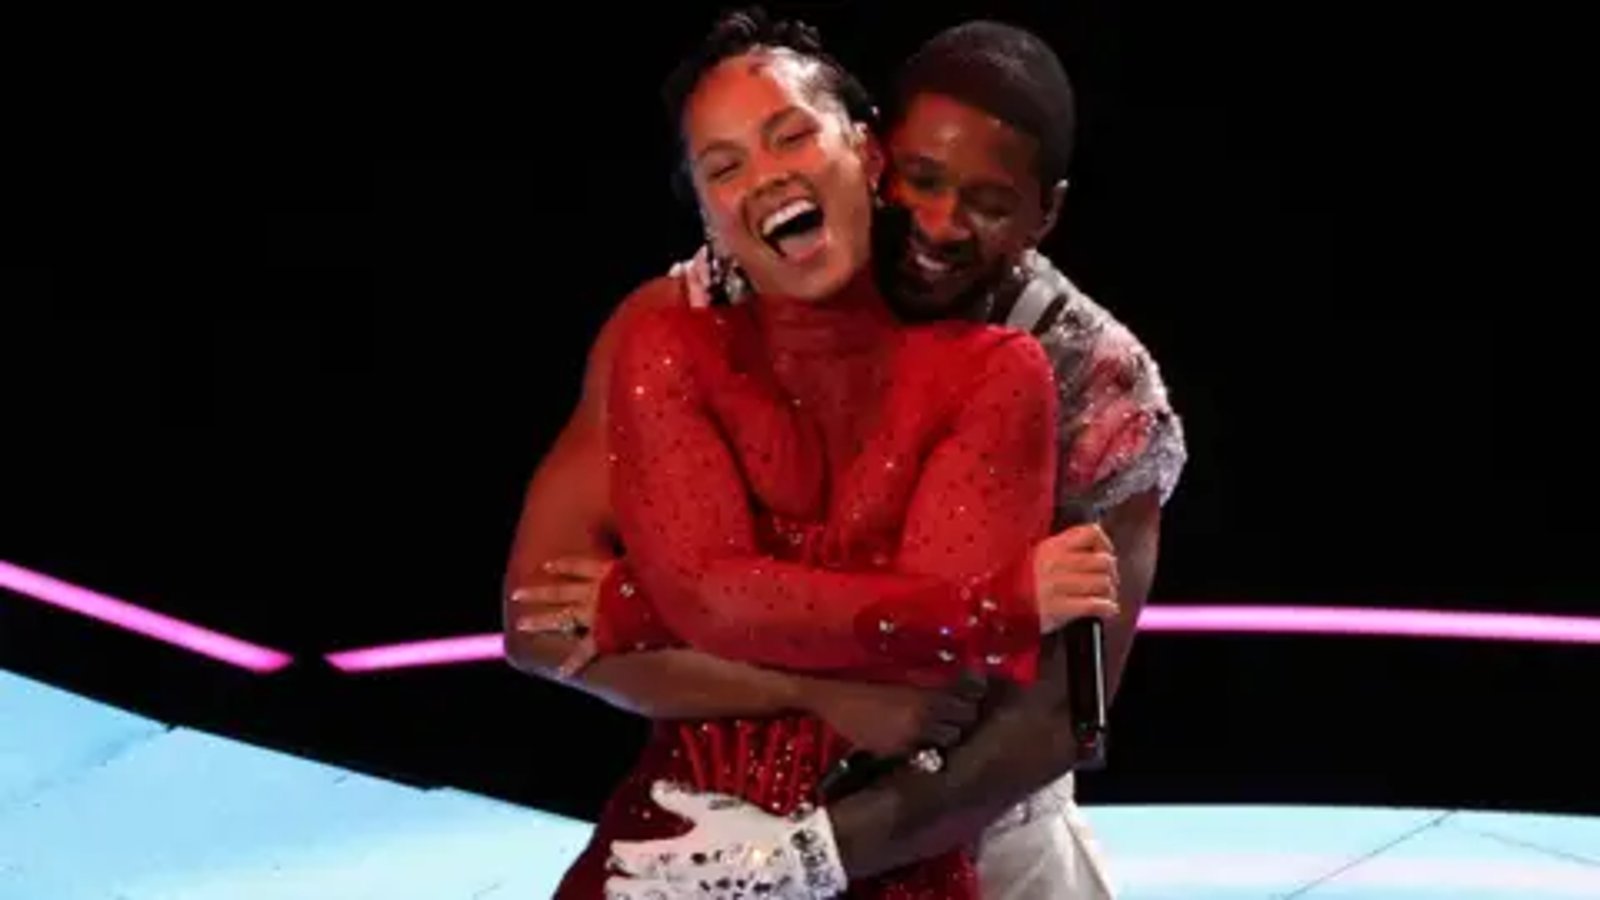 Le comportement d'Usher à l'endroit d'Alicia Keys vivement critiqué pendant le show de la mi-temps du Super Bowl